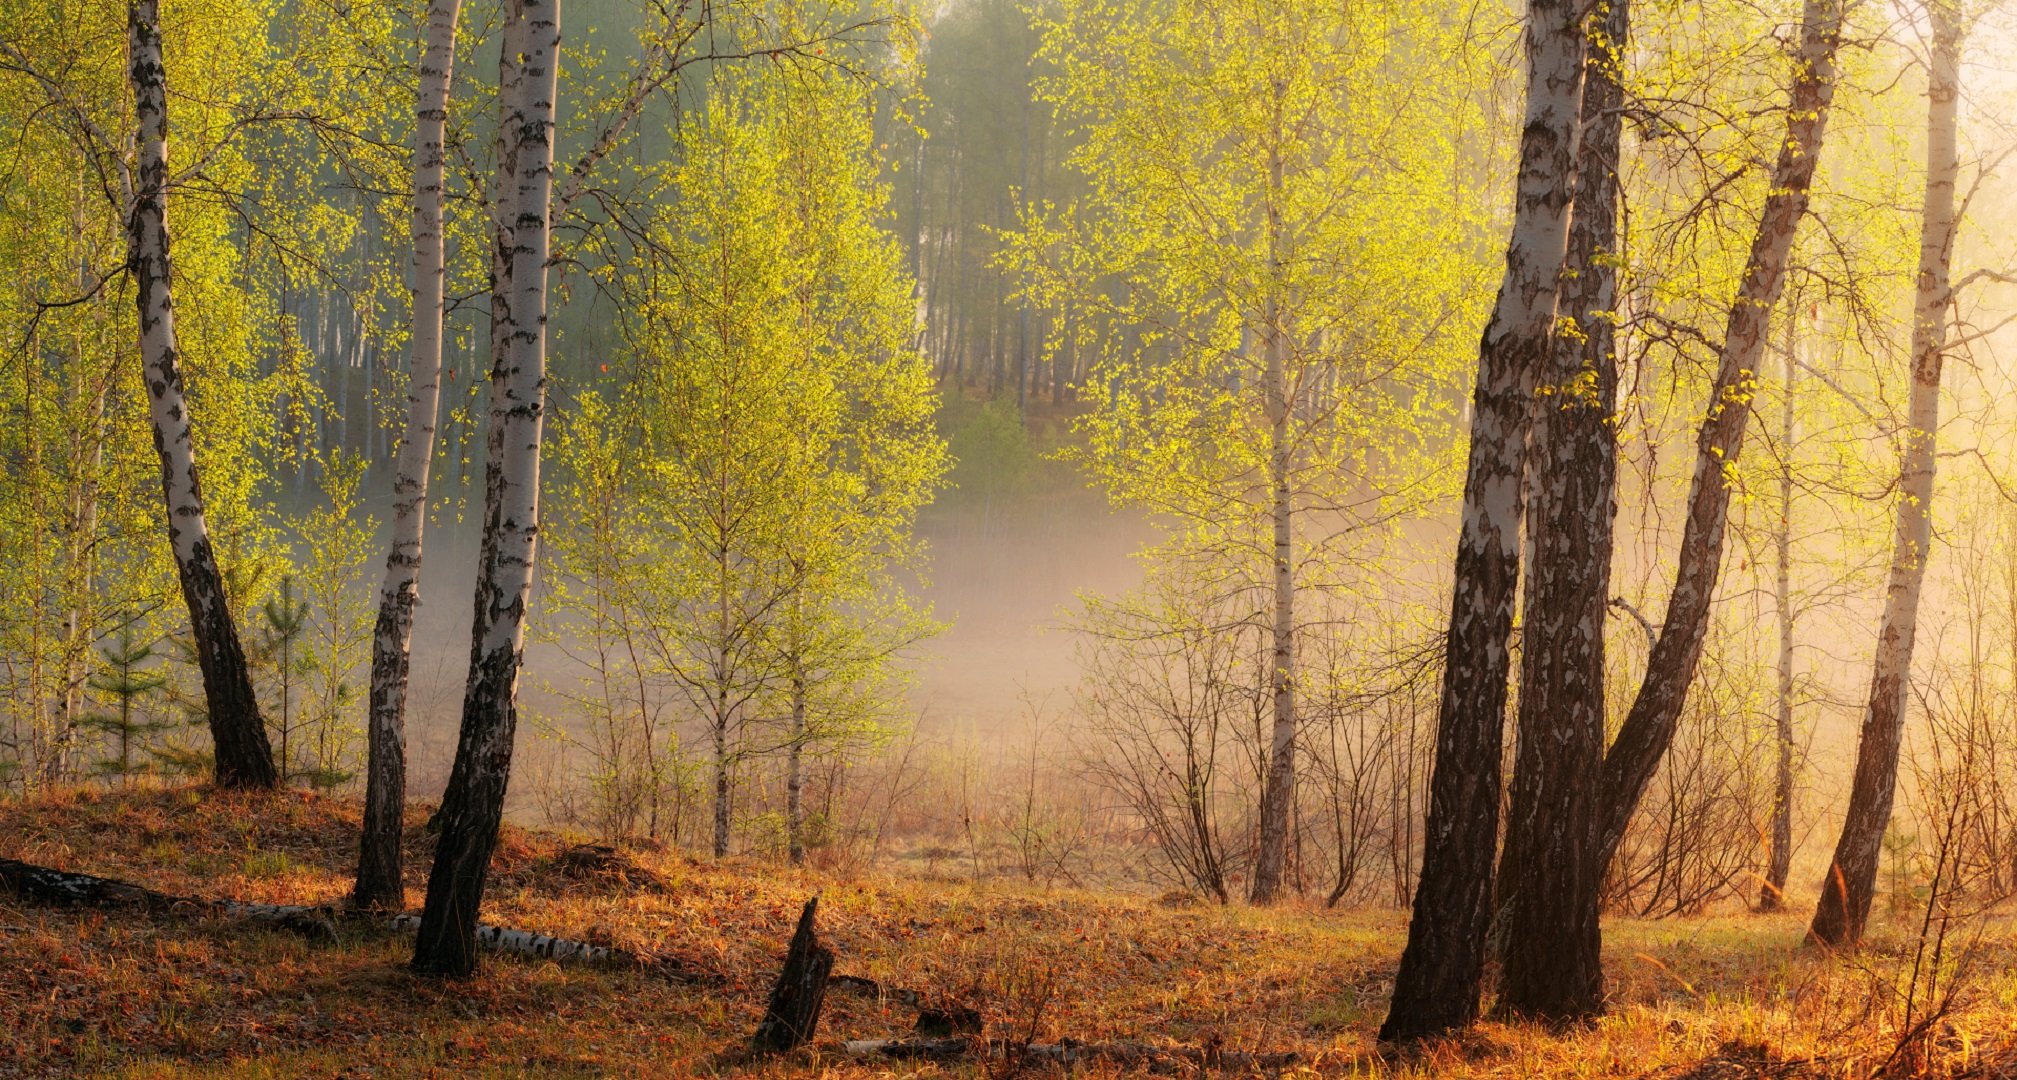 Текст был утренний час в огромном лесу. Утро в березовой роще. Ранняя осень березы. Осенний березовый лес.